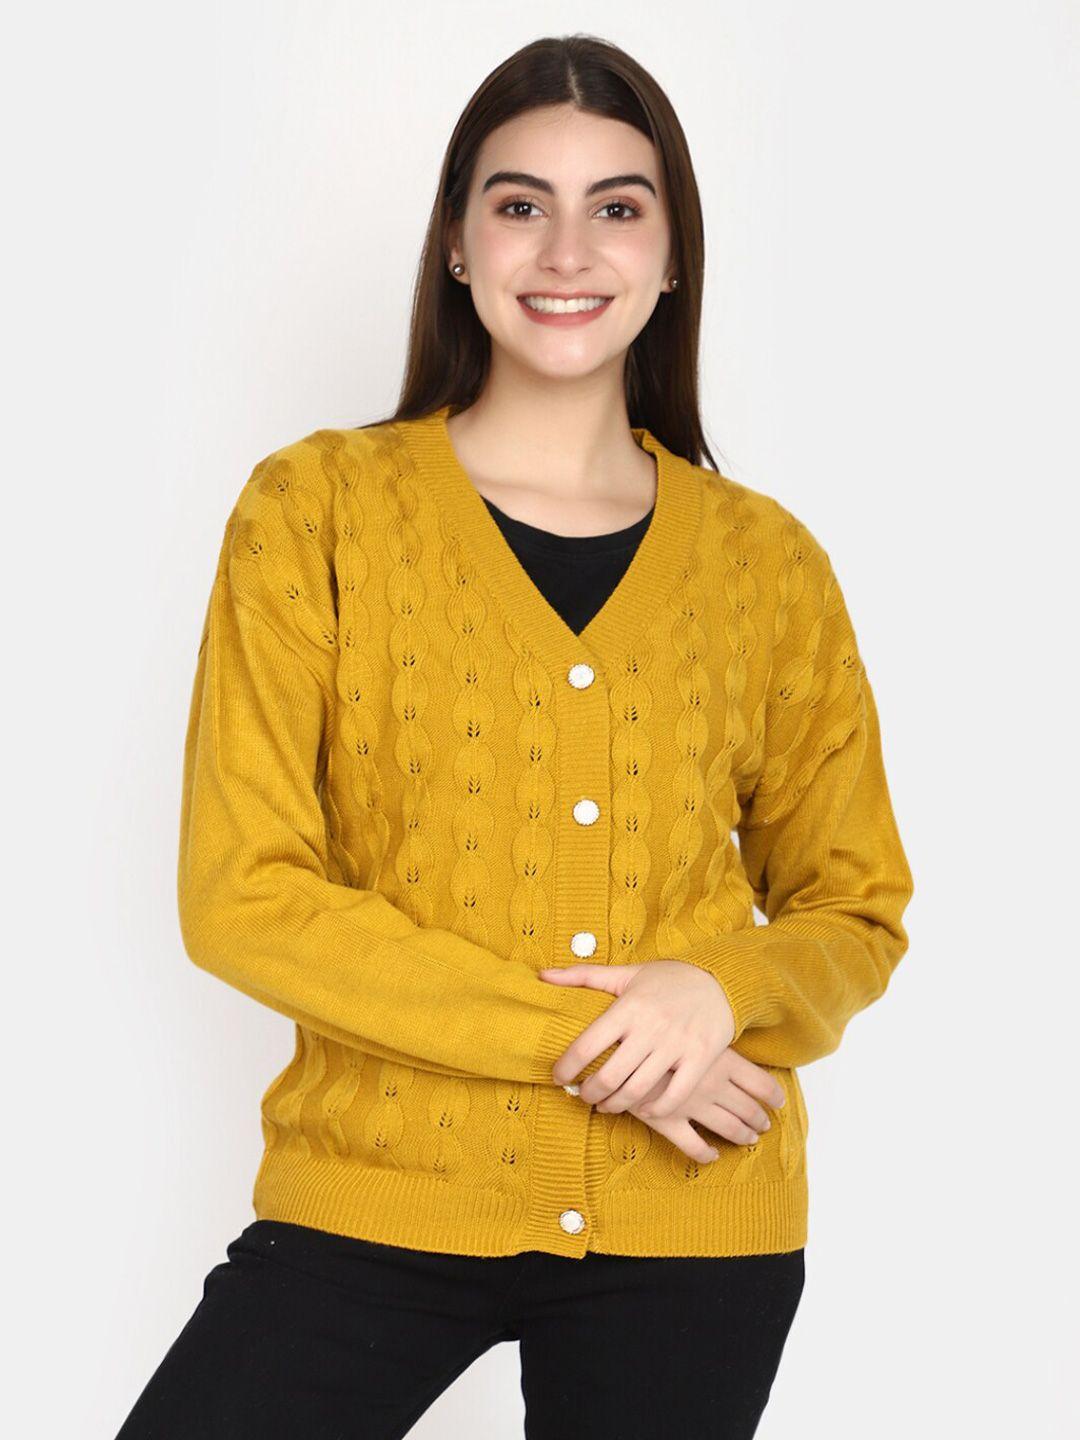 v-mart-cable-knit-self-design-v-neck-cardigan-sweater